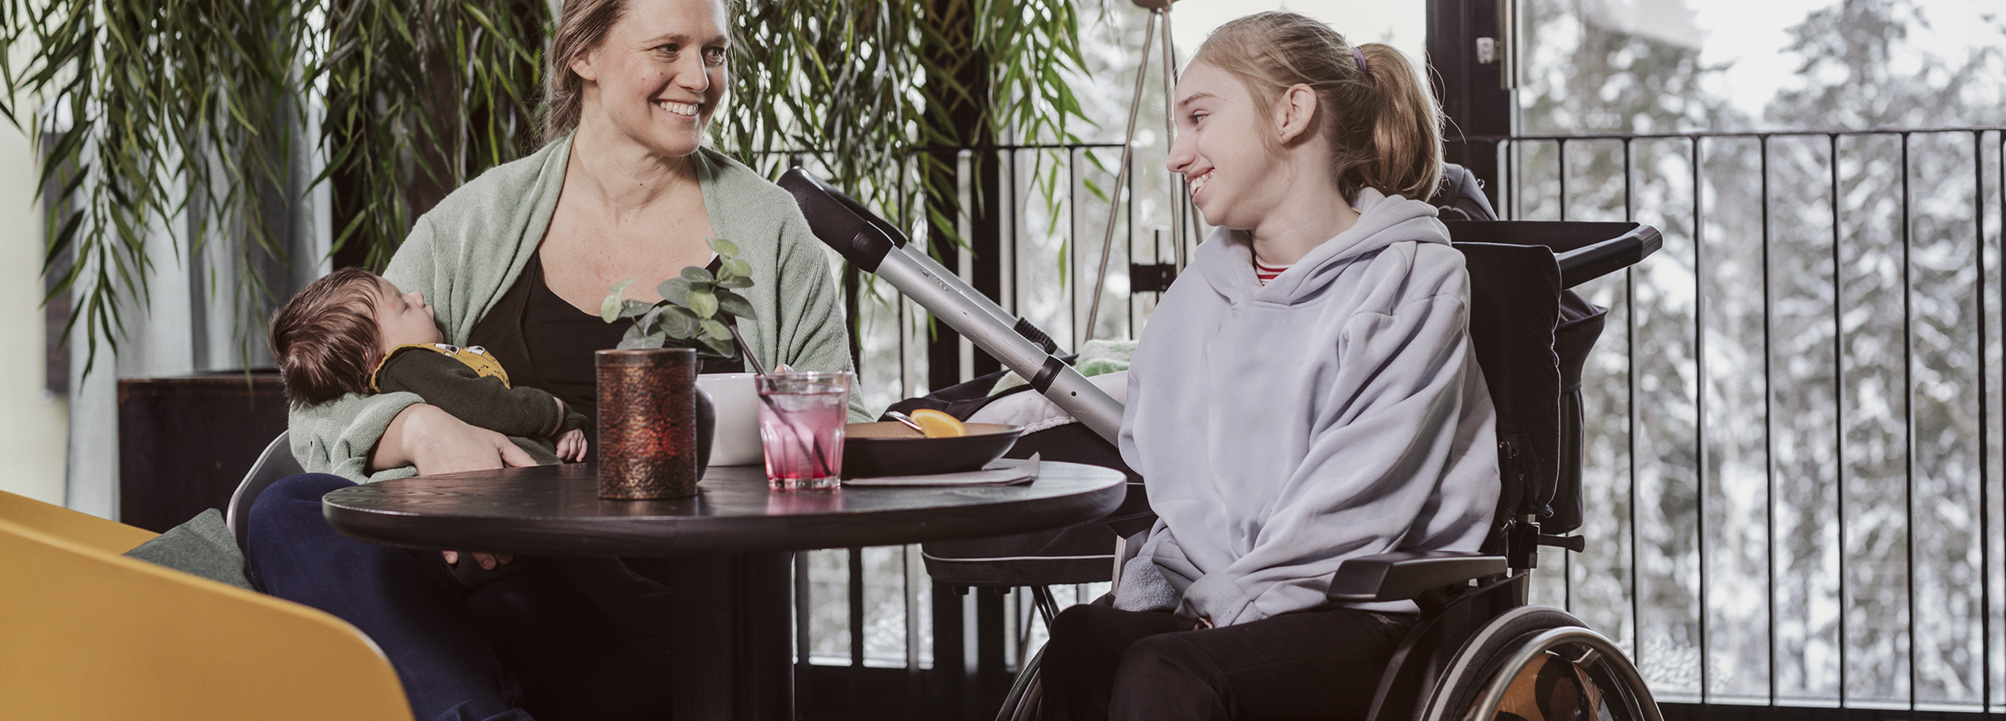 En kvinna är på ett café tillsammans med en yngre flicka som använder rullstol   